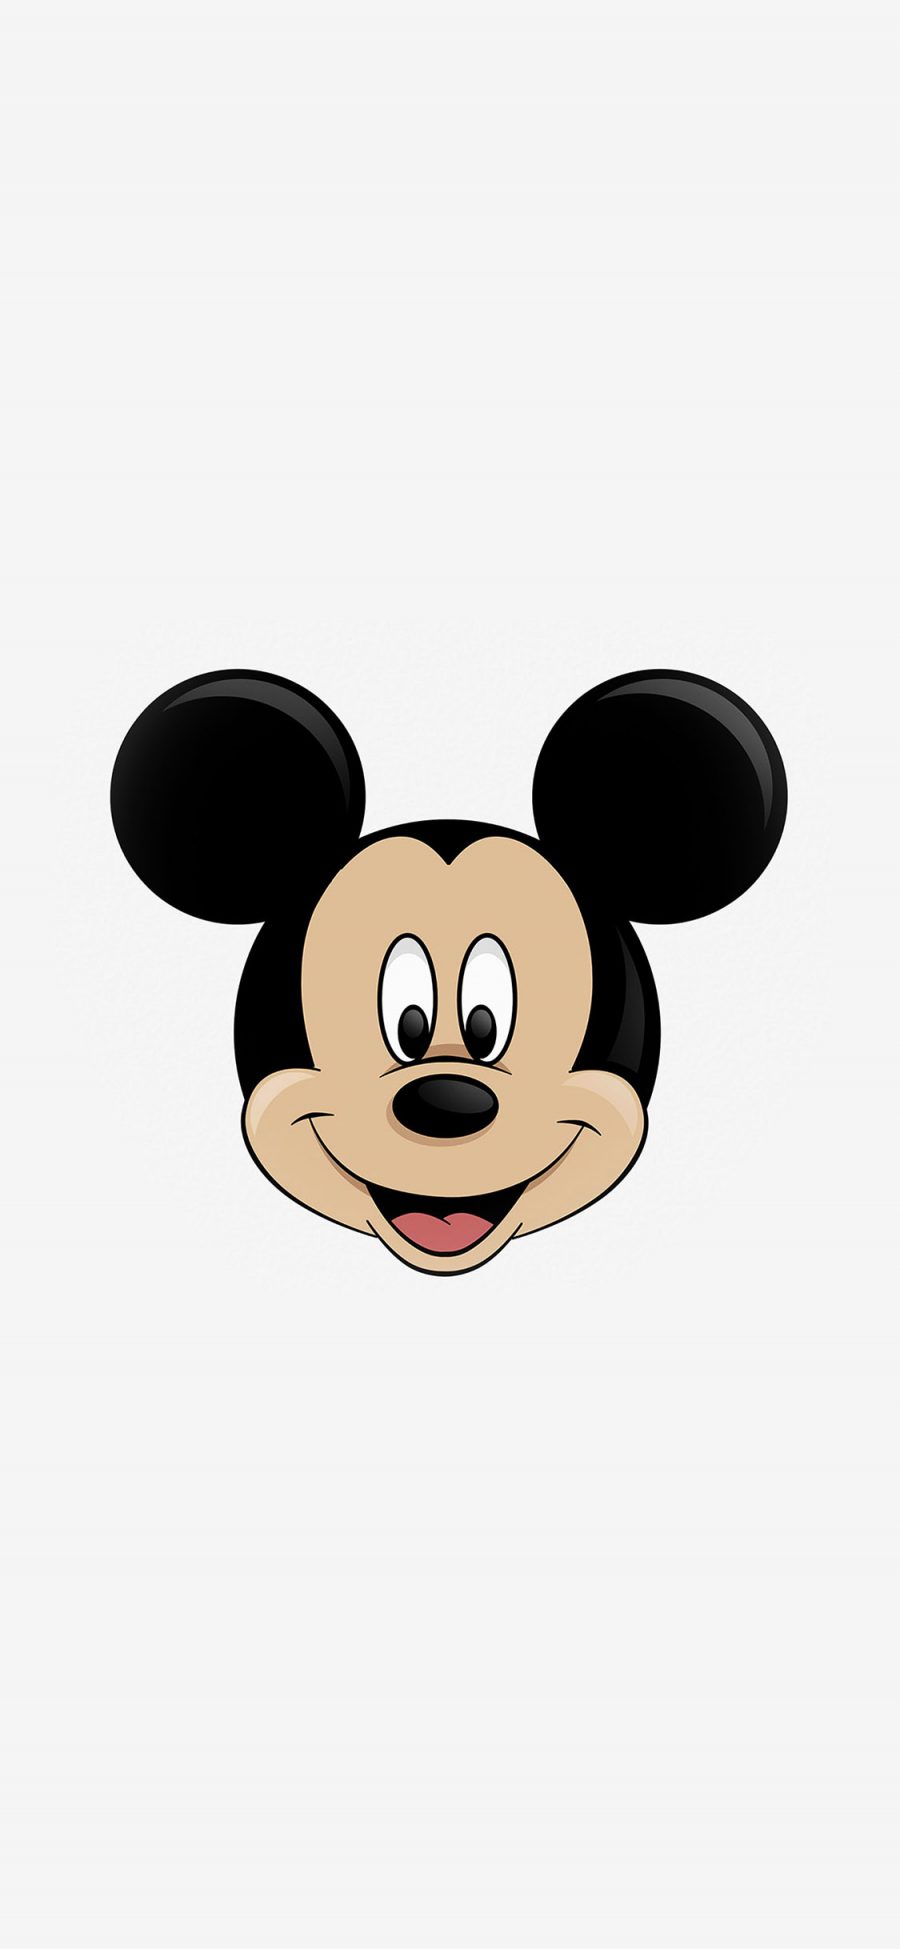 [2436×1125]米奇 米老鼠 迪士尼 动画 卡通 可爱 苹果手机动漫壁纸图片